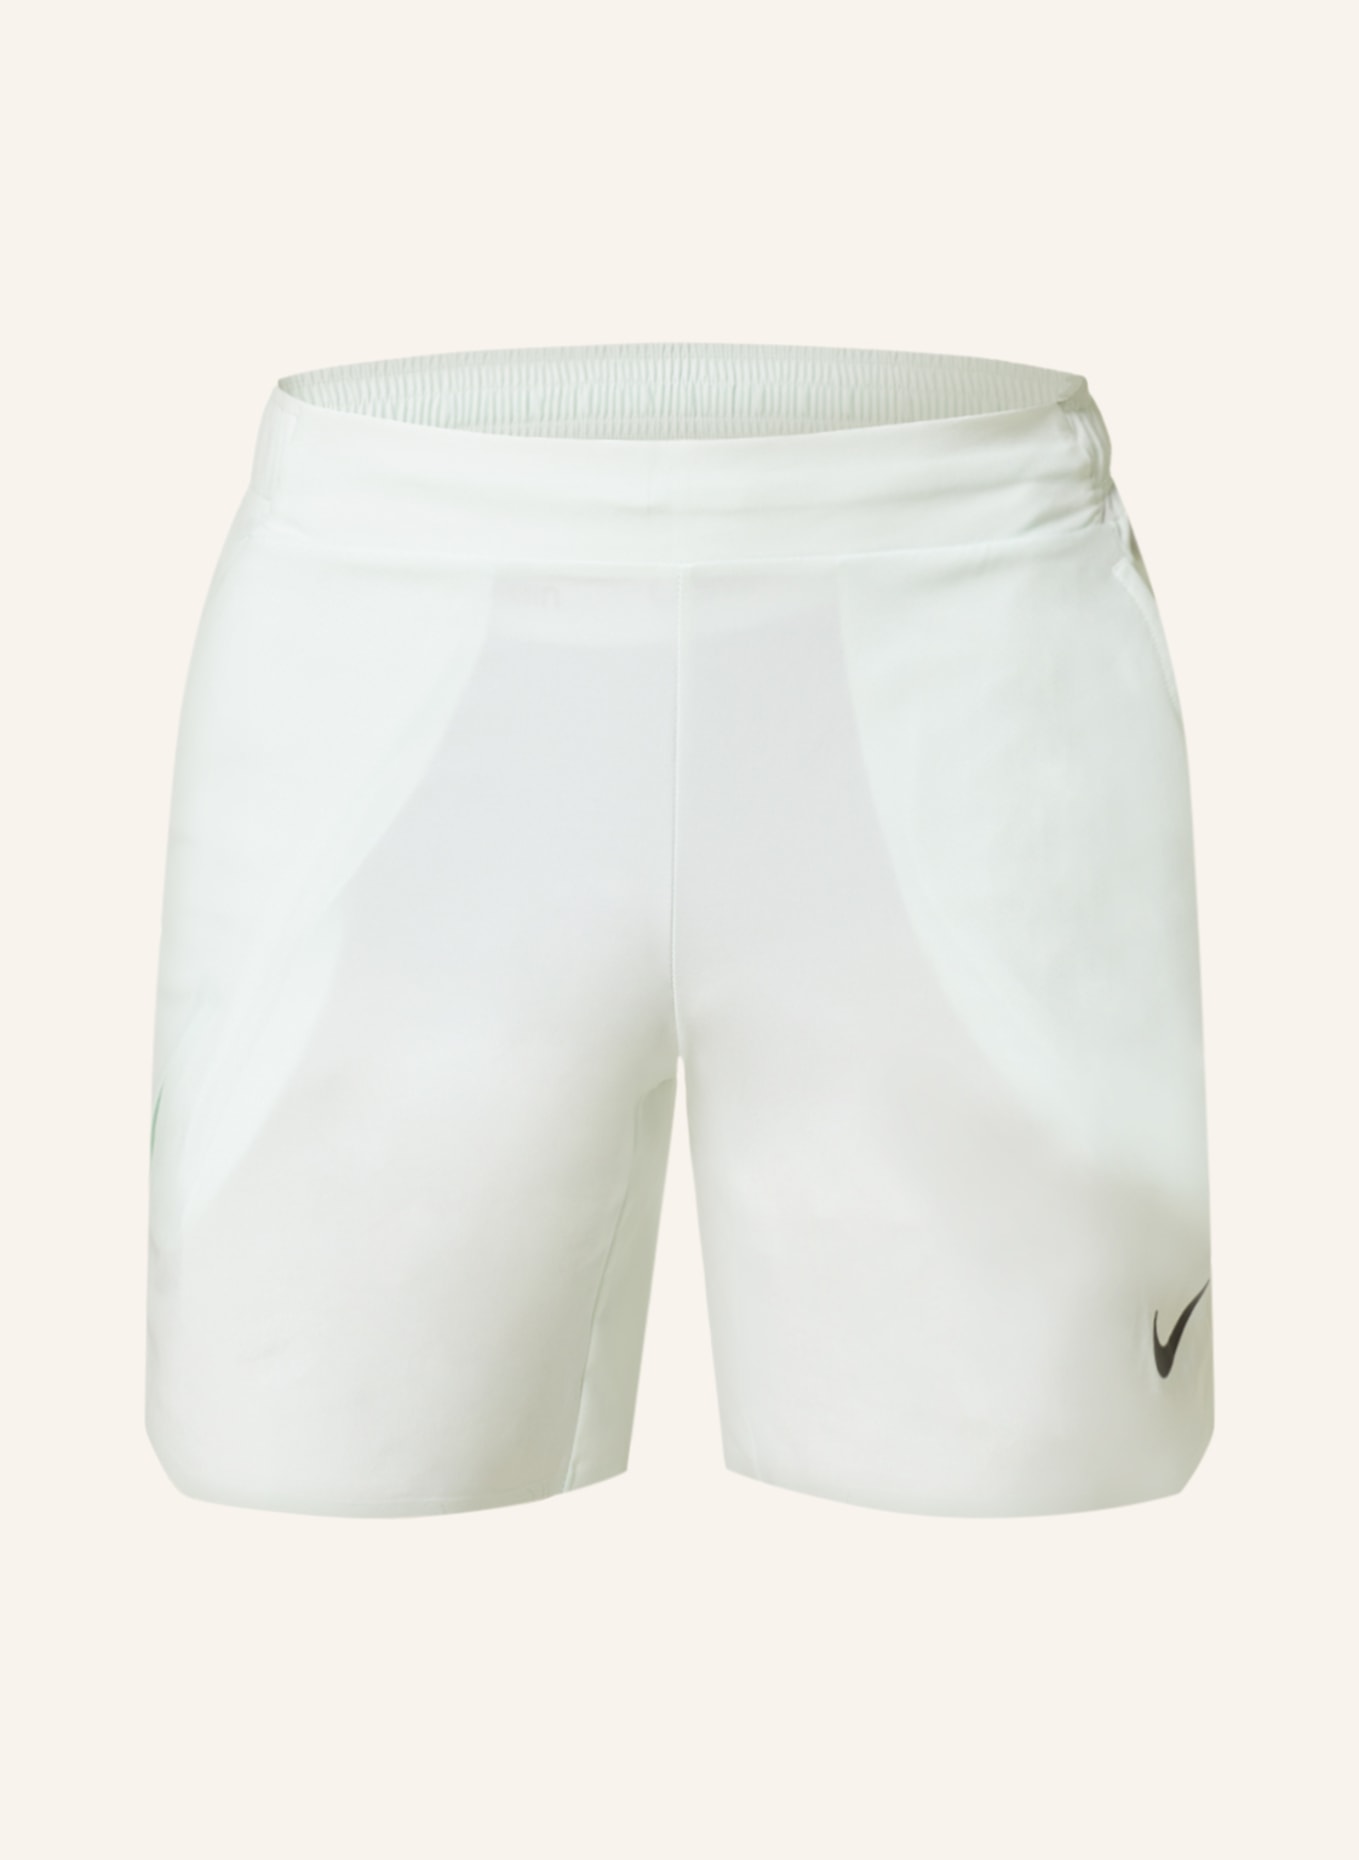 Nike Tennisshorts COURT DRI-FIT, Farbe: MINT (Bild 1)